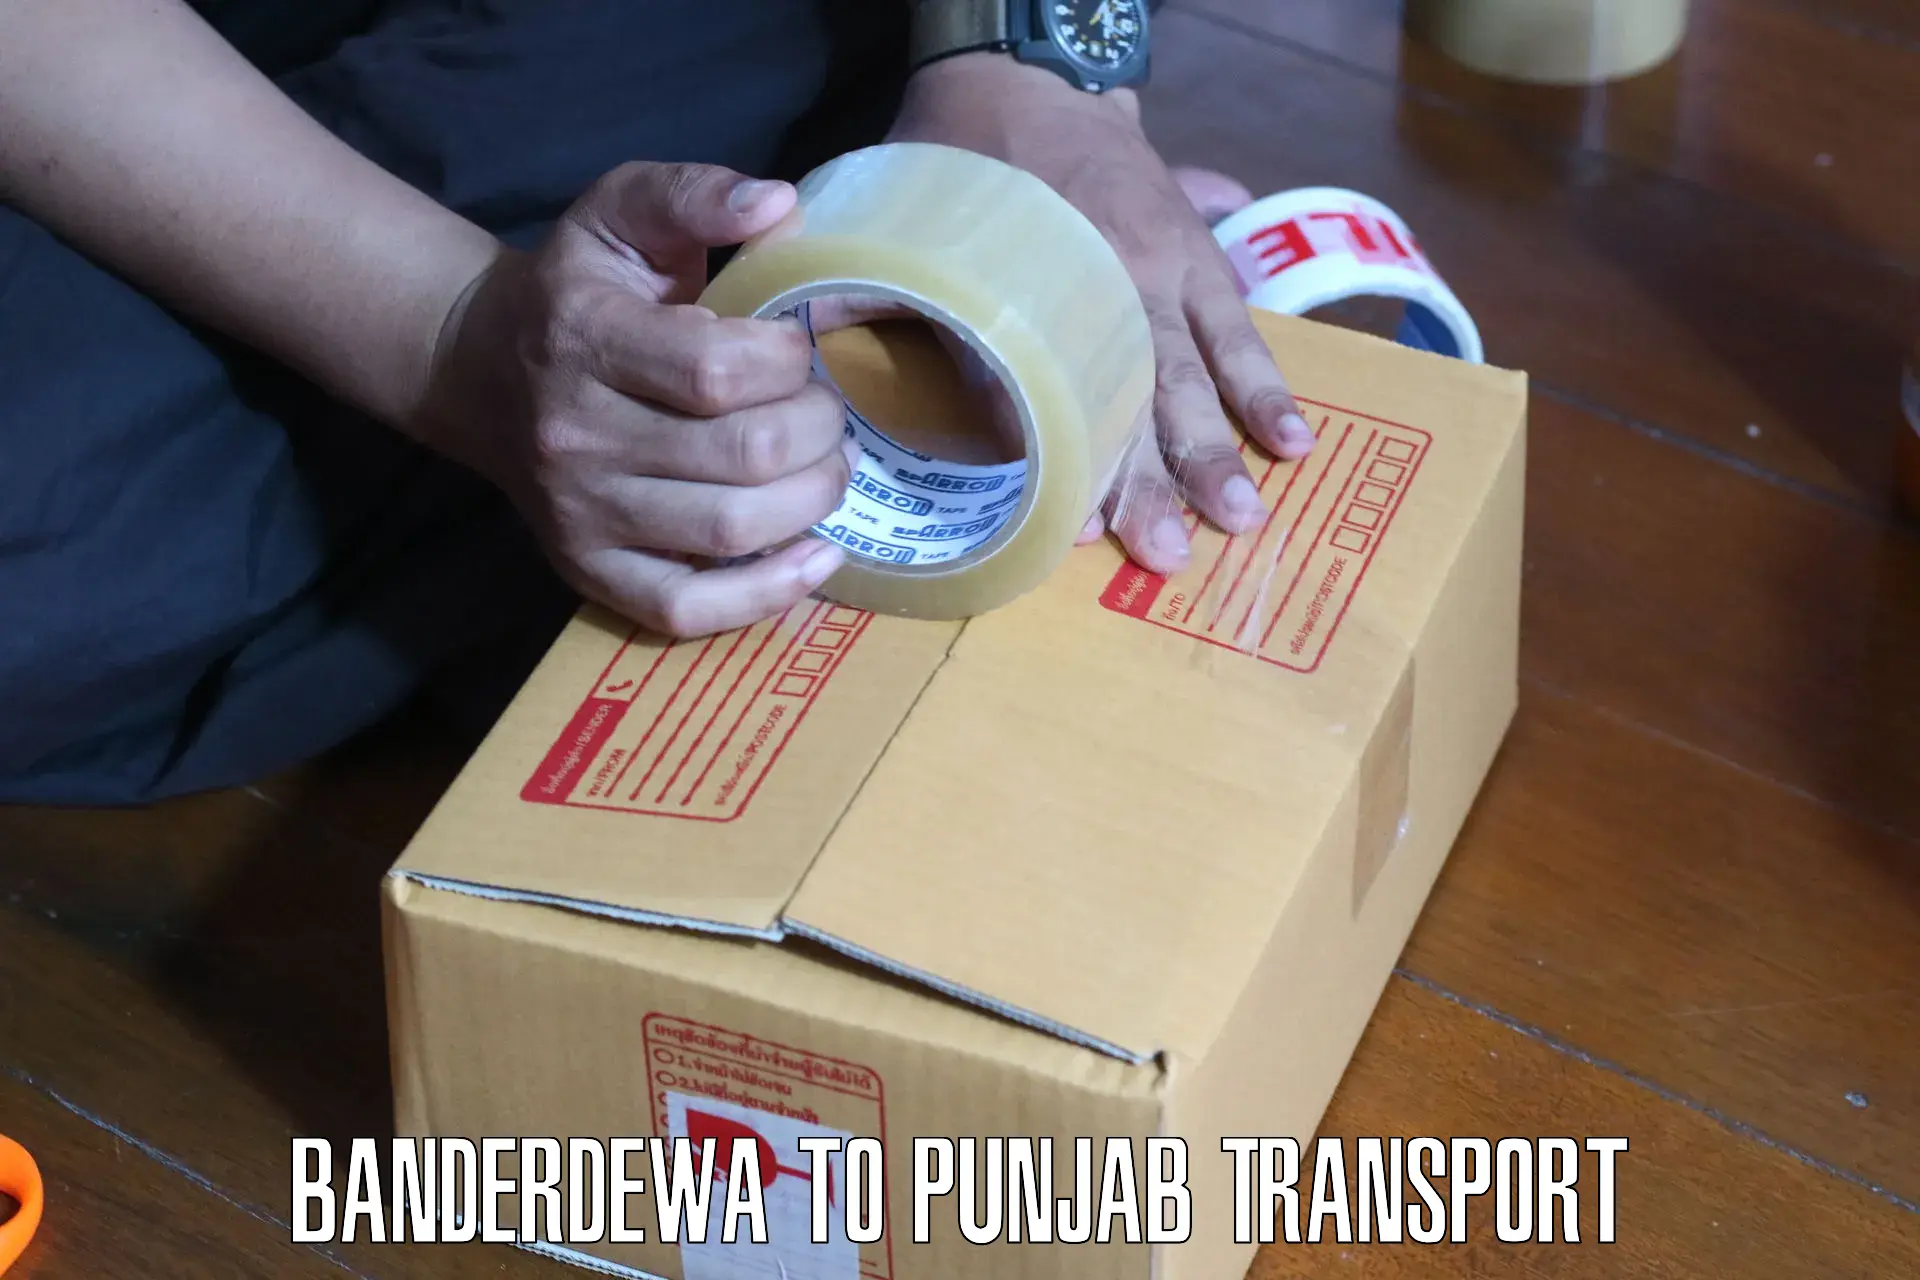 Goods transport services Banderdewa to Jalandhar